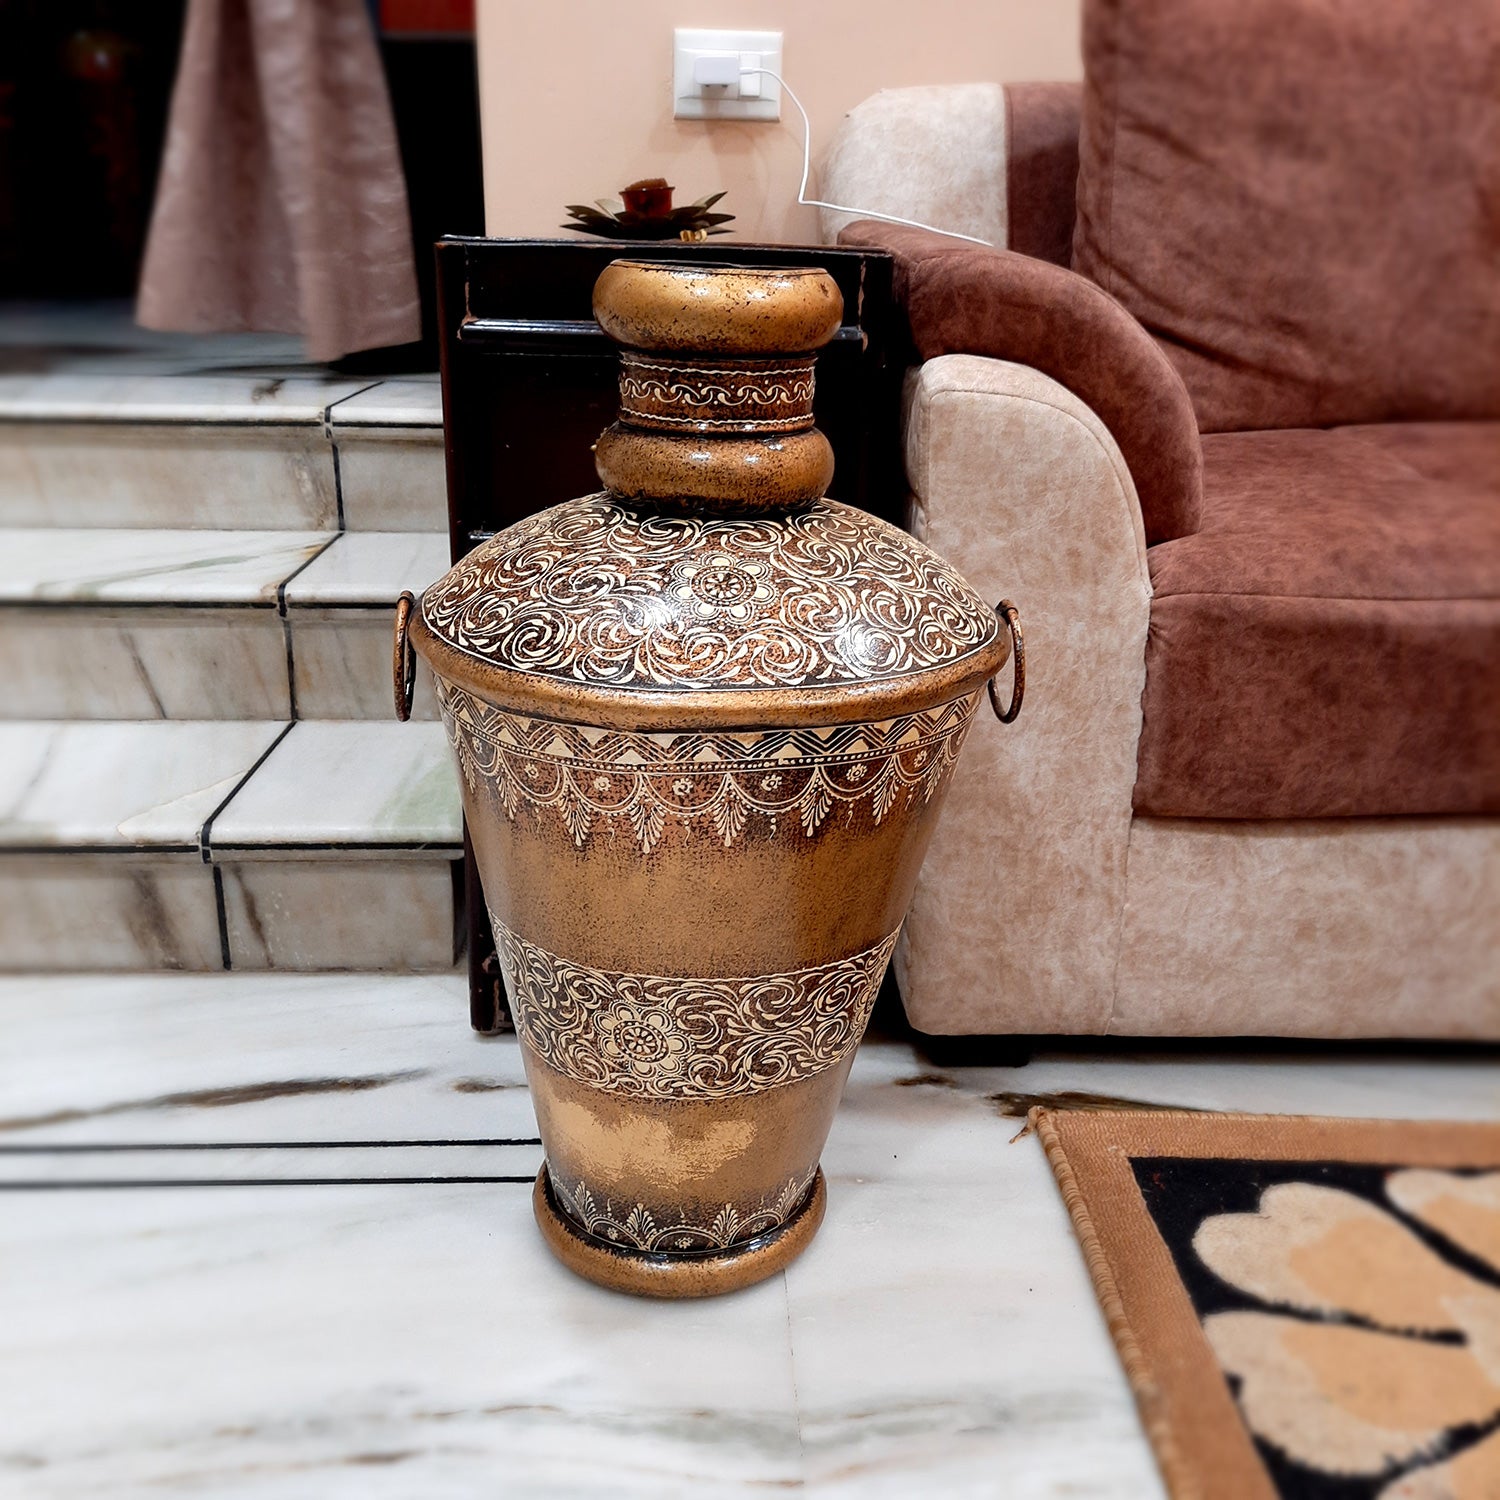 Big Flower Vase | Corner Metal Vase | Long Vases - For Home Decor, Living Room, Entrance, Hallway & Gifts - 25 Inch - Apkamart